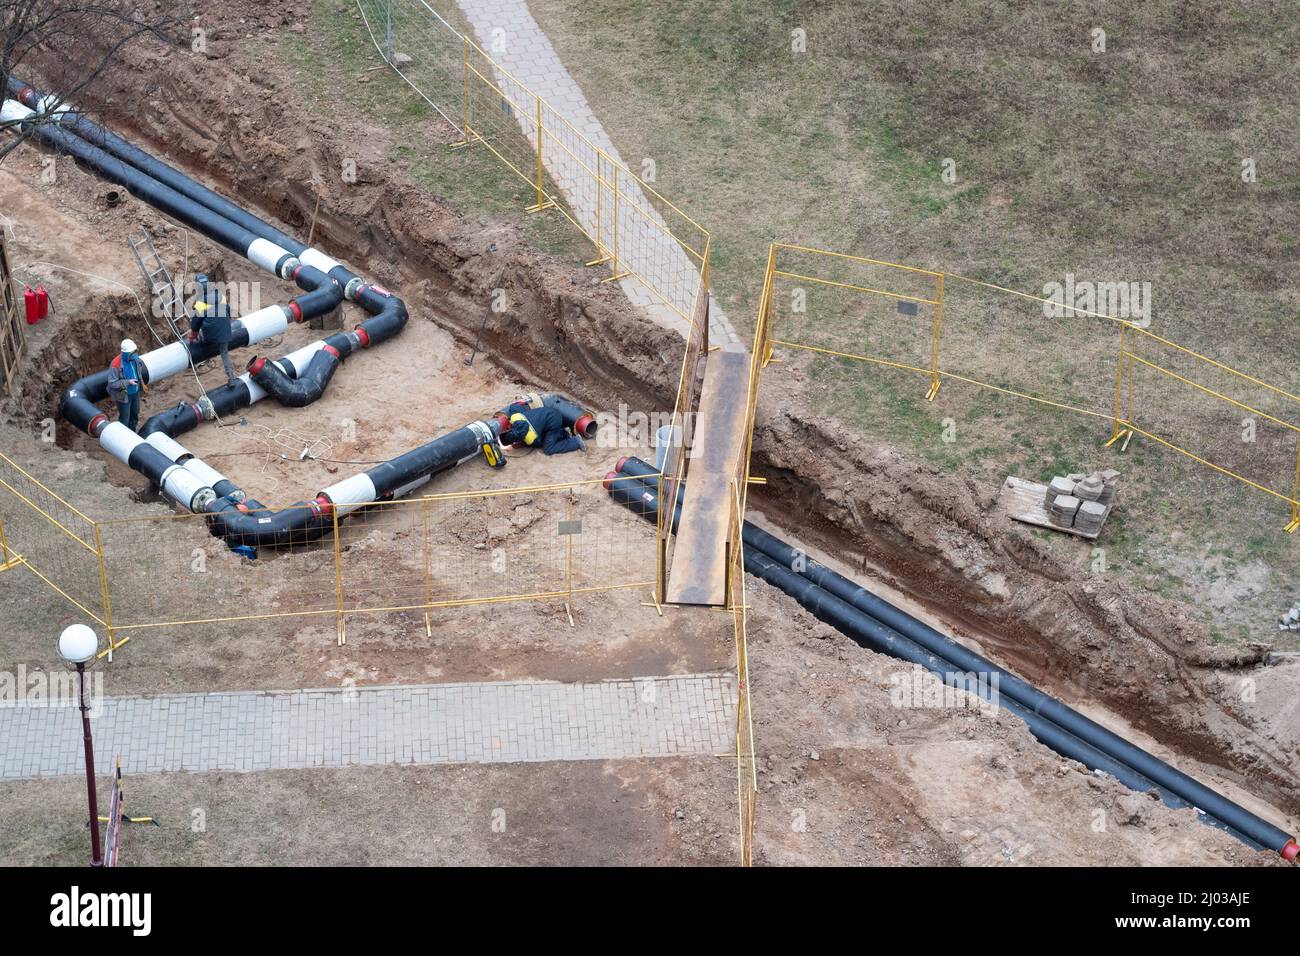 Bauarbeiten. Verlegung einer Pipeline, um Häuser mit heißem und kaltem Wasser zu versorgen. Austausch der alten Pipeline Stockfoto